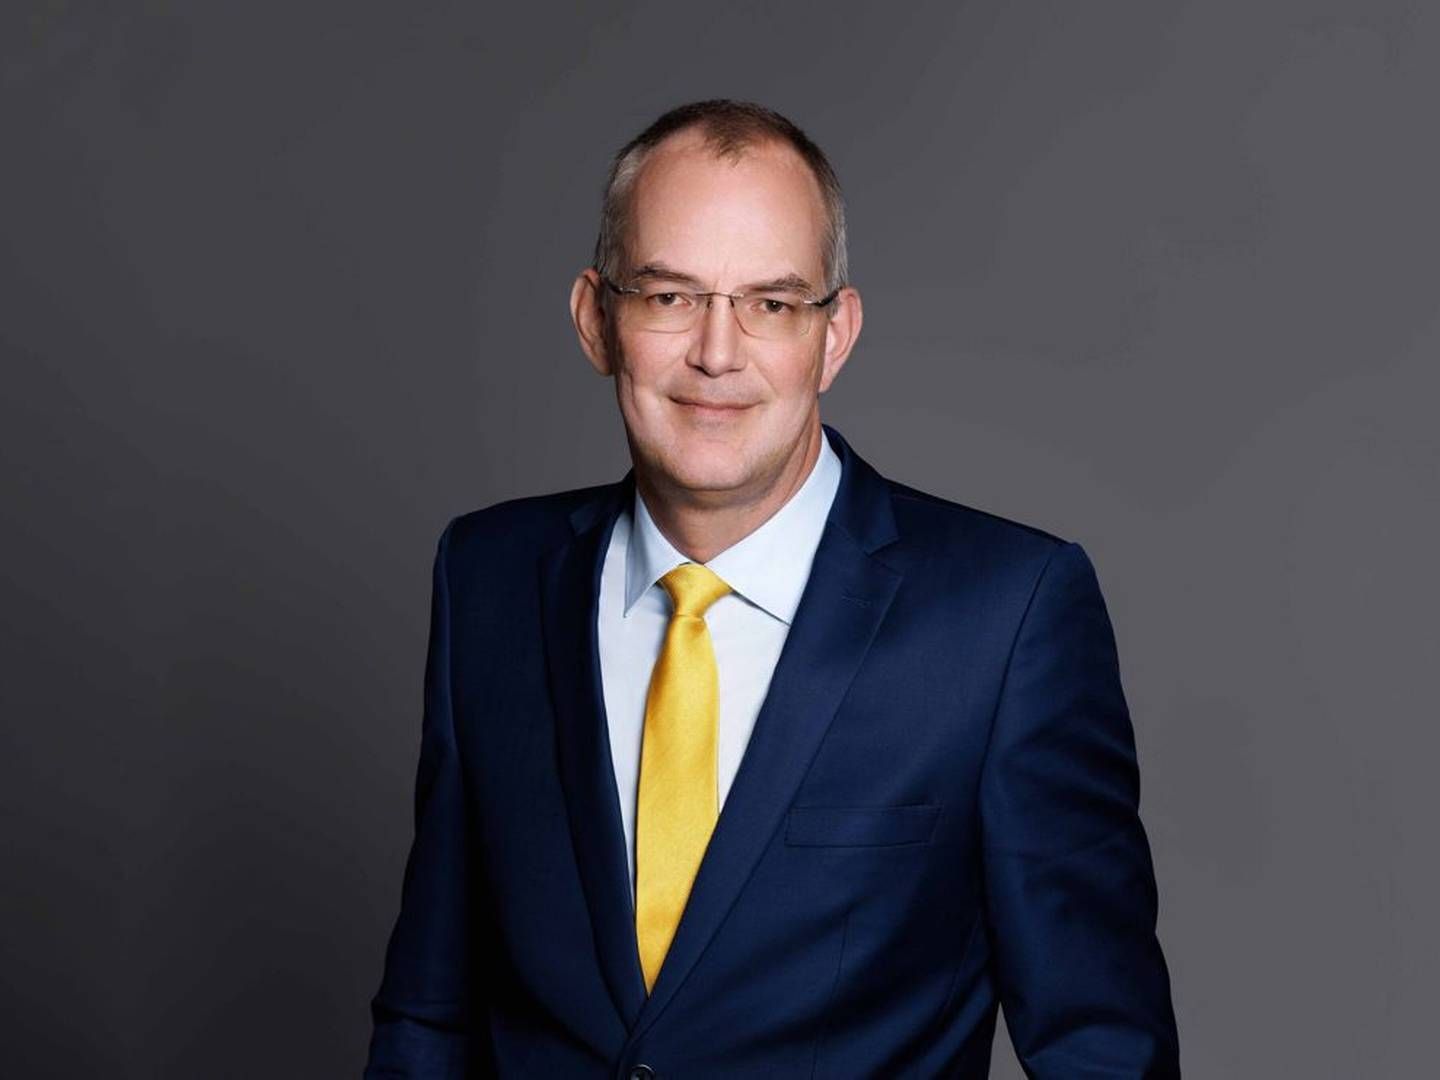 Adm. direktør i Stolt-Nielsen Udo Lange påpeger, at man fortsat er åben for attrakive investeringer. | Foto: Stolt-nielsen